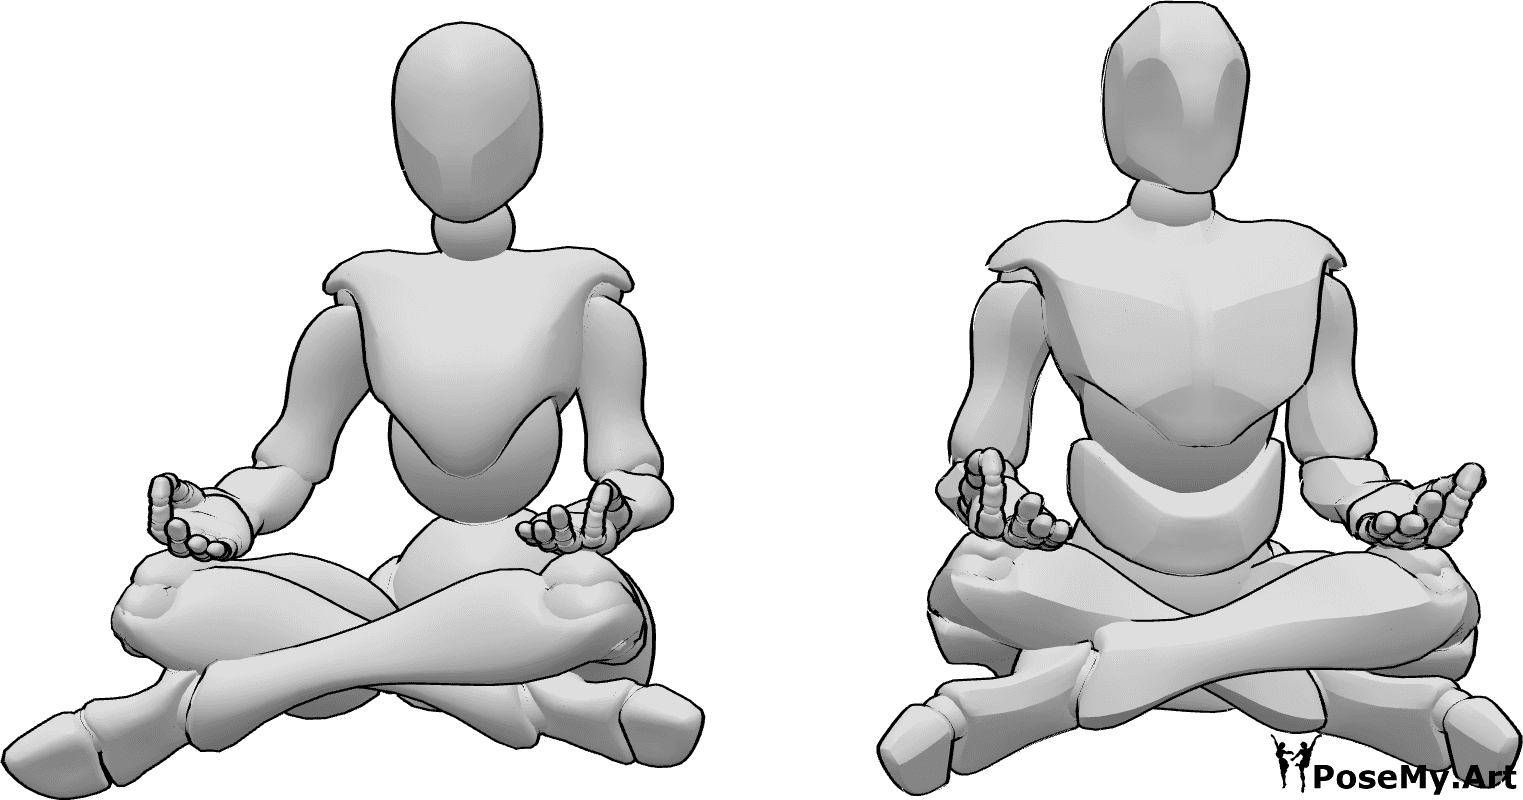 Posen-Referenz- Weiblich männlich meditierende Pose - Weibliche und männliche Meditierende in gemeinsamer Pose